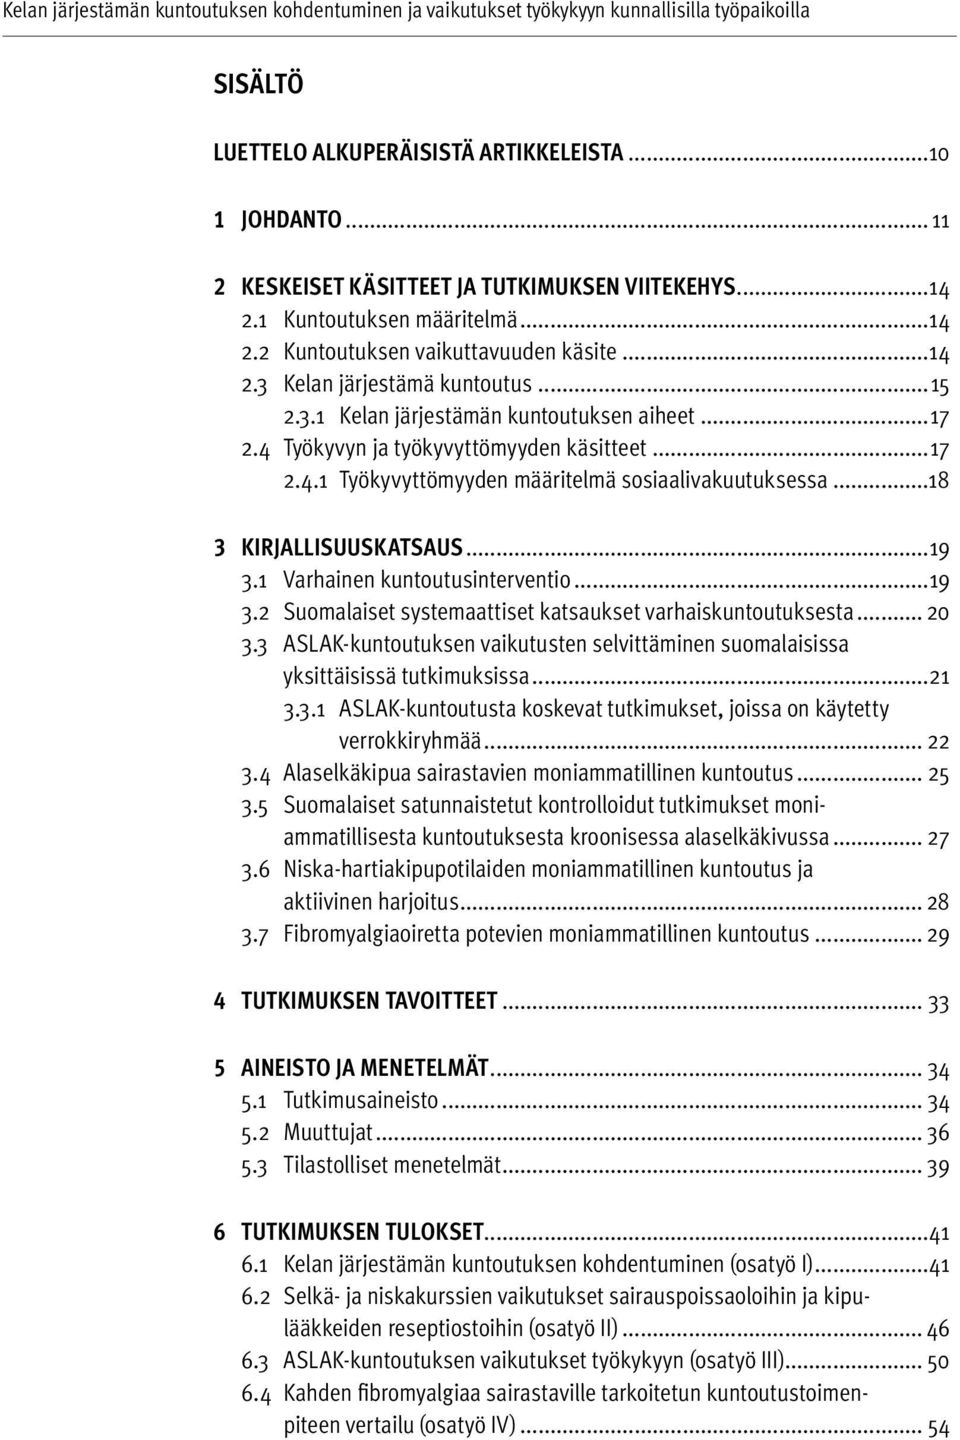 1 Varhainen kuntoutusinterventio...19 3.2 Suomalaiset systemaattiset katsaukset varhaiskuntoutuksesta... 20 3.3 ASLAK-kuntoutuksen vaikutusten selvittäminen suomalaisissa yksittäisissä tutkimuksissa.